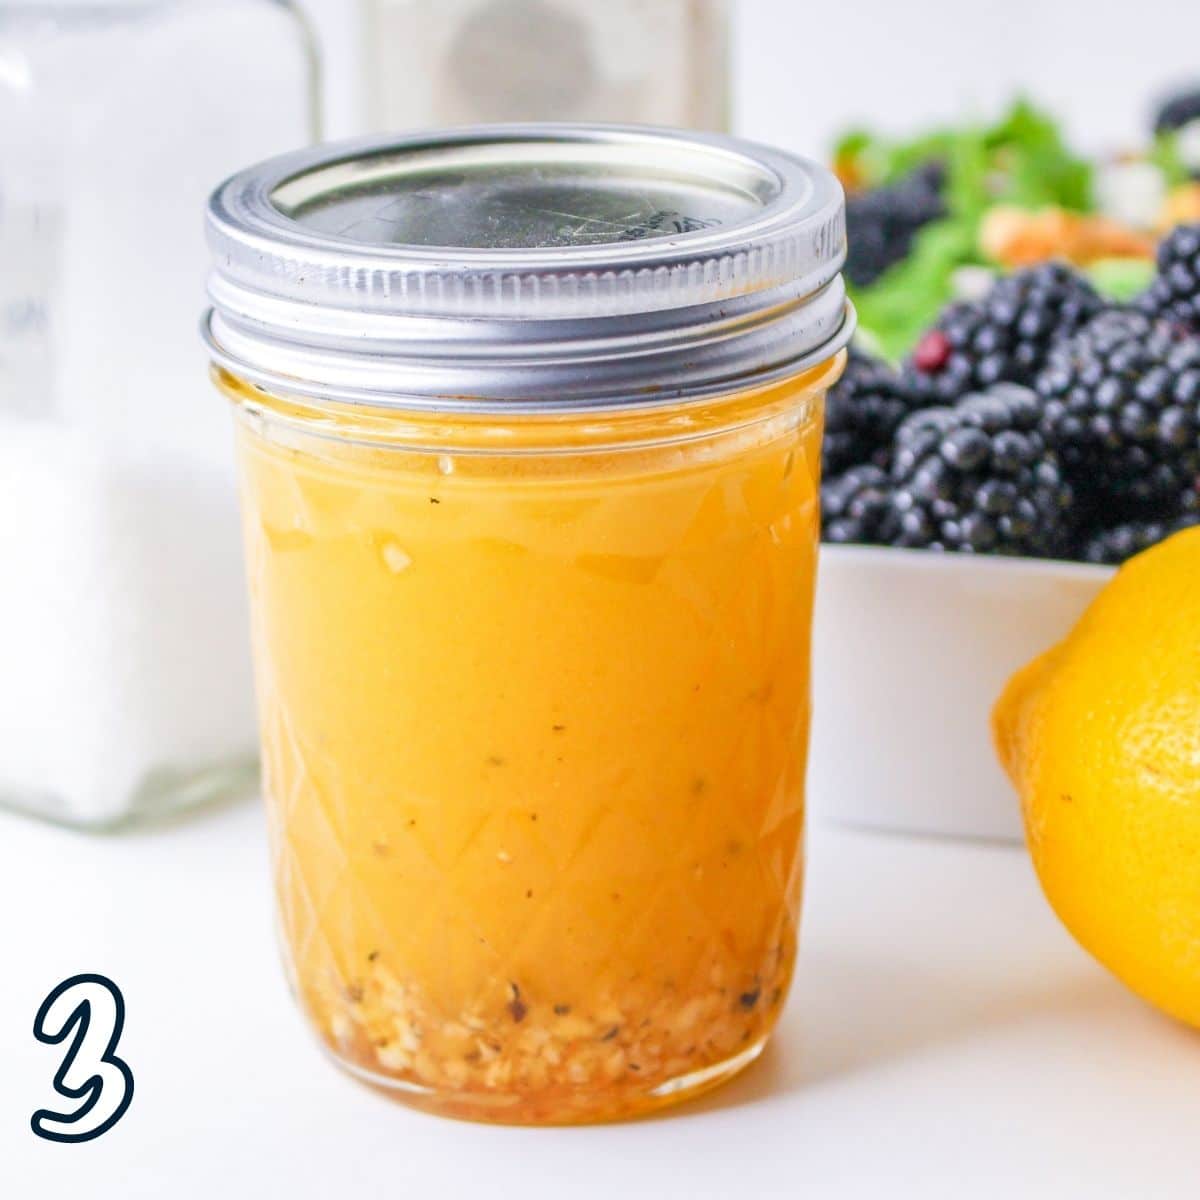 Mixed honey citrus dressing in a jar. 